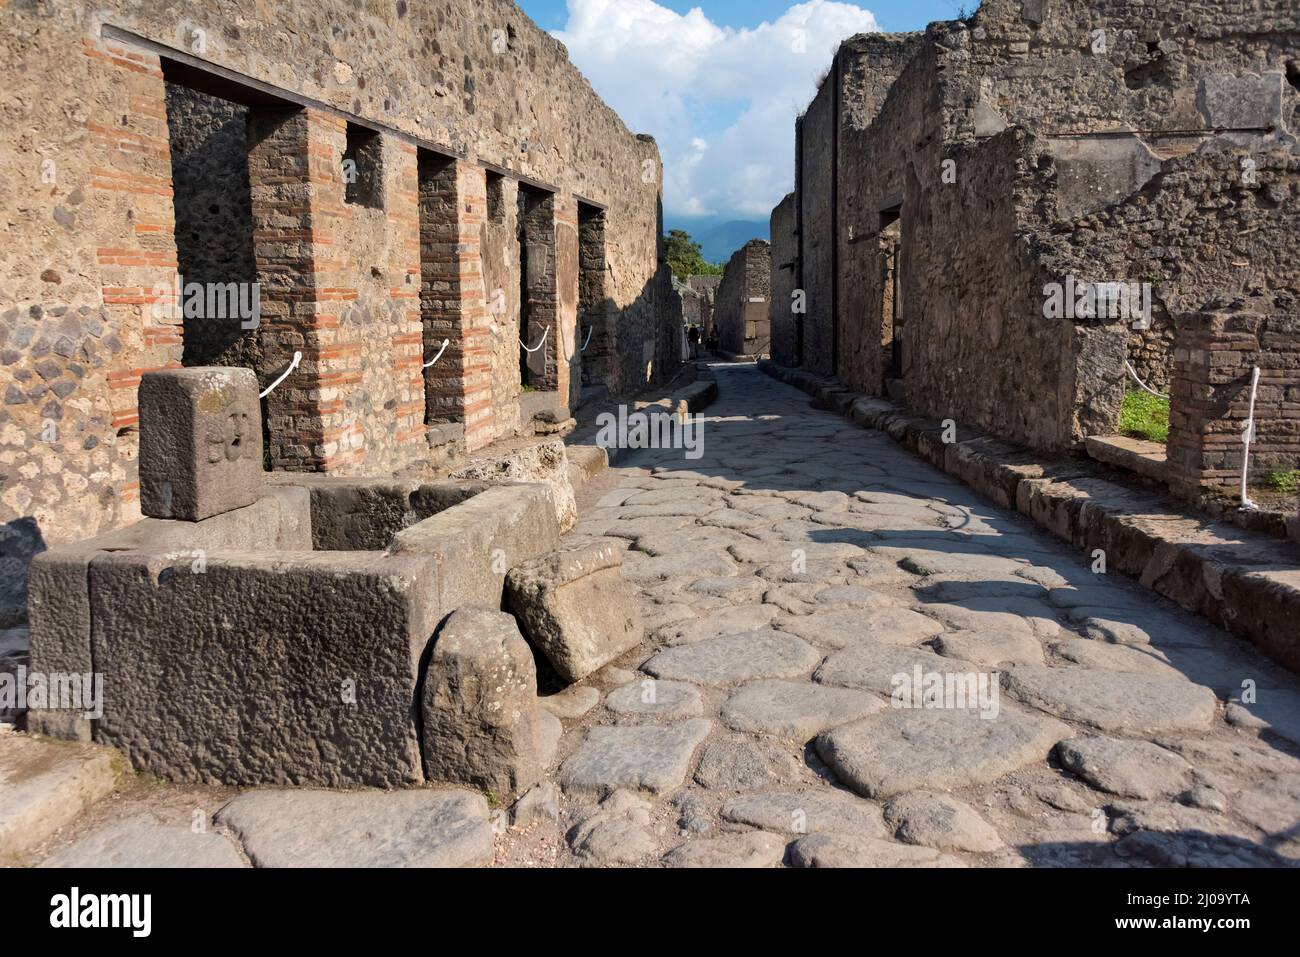 Ruines de Pompéi, puits, site classé au patrimoine mondial de l'UNESCO, province de Naples, région de Campanie, Italie Banque D'Images